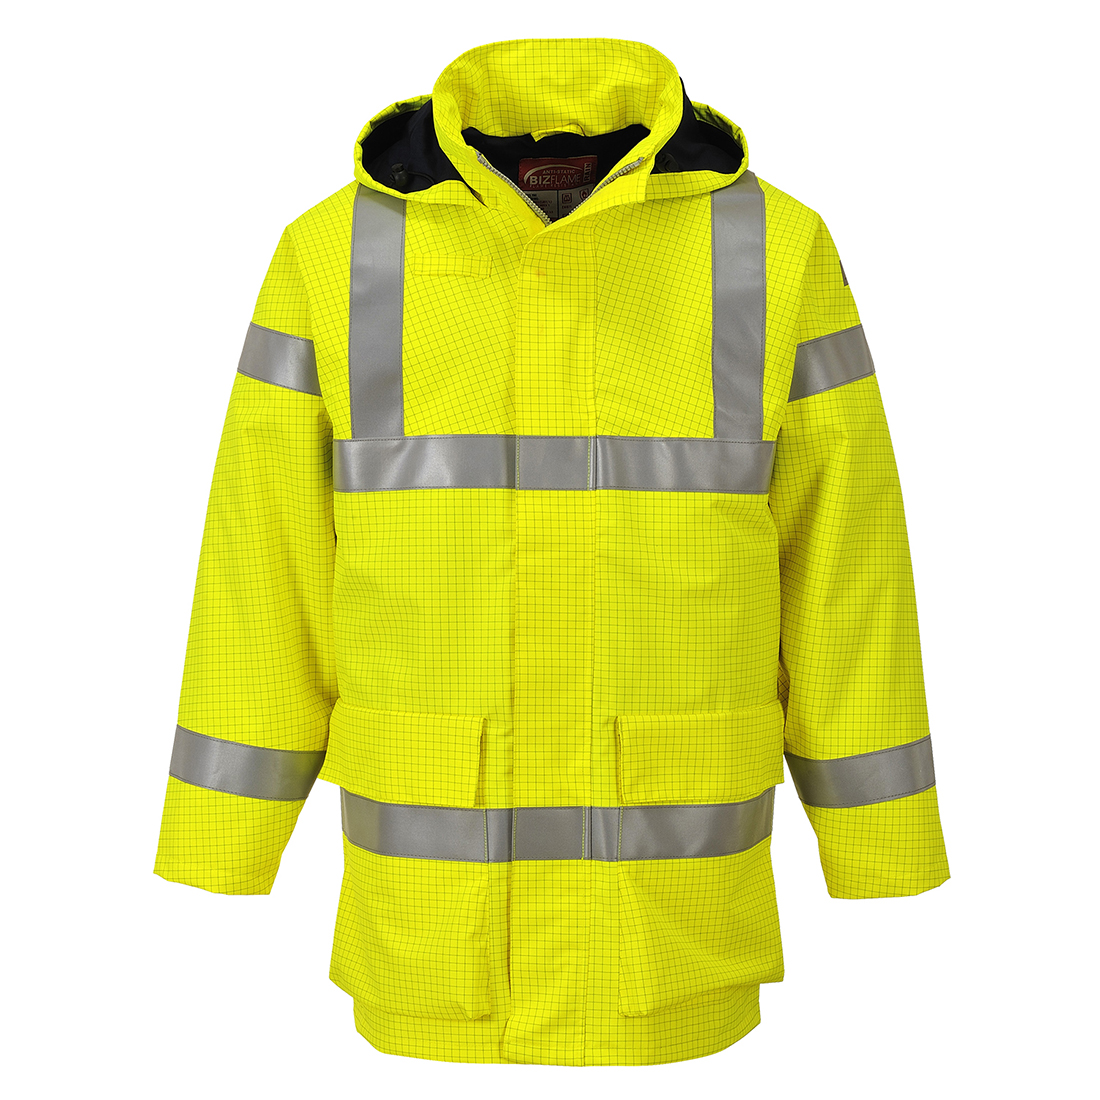 Bizflame Rain leichte Warnschutz Multinorm Jacke S774 in Gelb, Größe L von Portwest